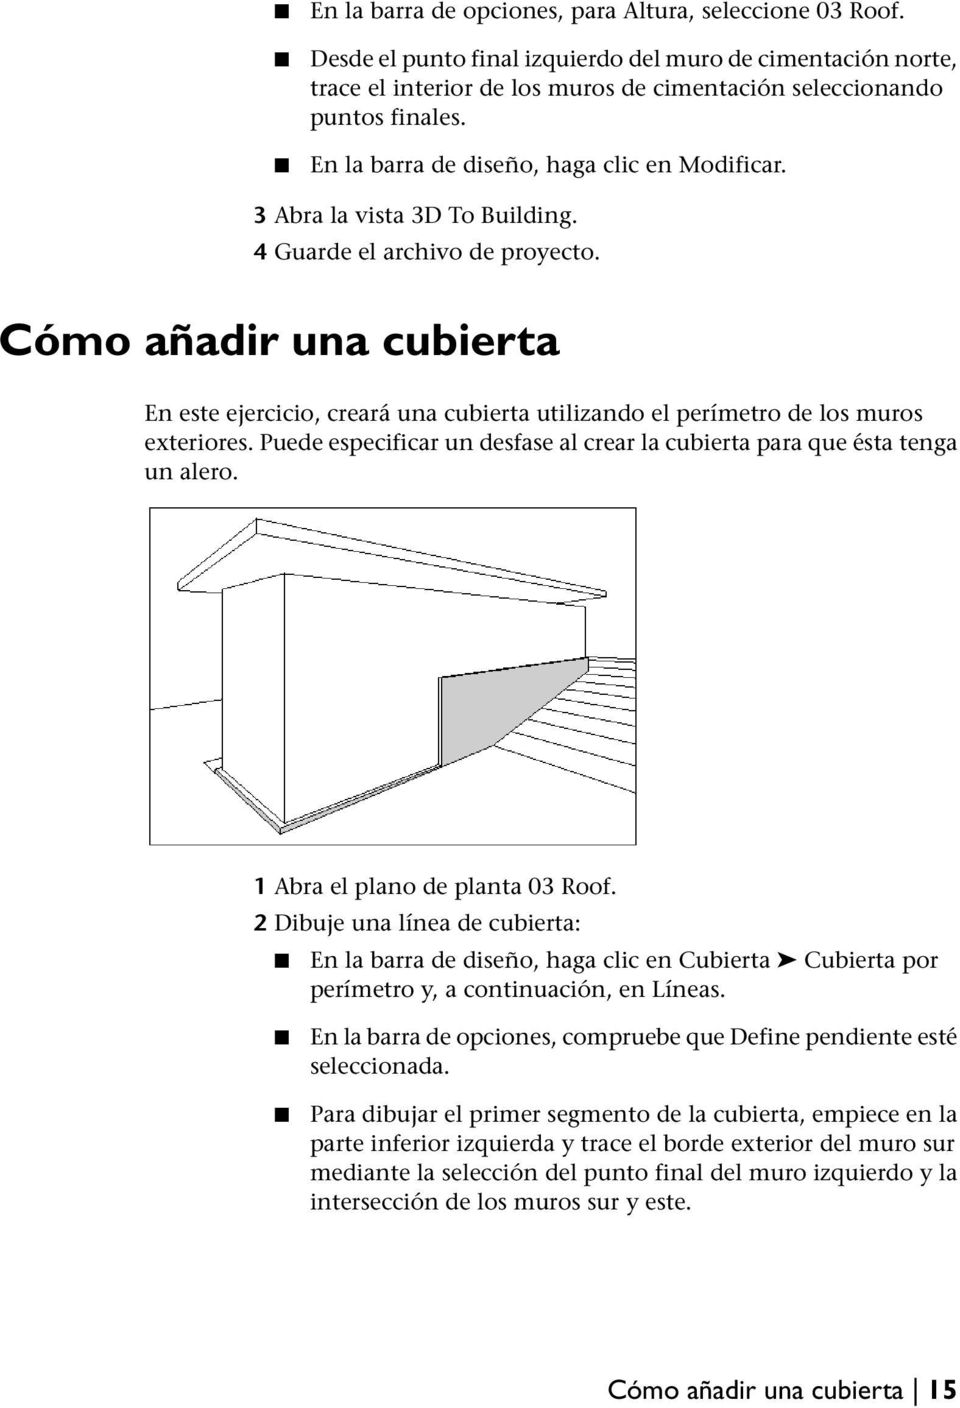 Cómo añadir una cubierta En este ejercicio, creará una cubierta utilizando el perímetro de los muros exteriores. Puede especificar un desfase al crear la cubierta para que ésta tenga un alero.